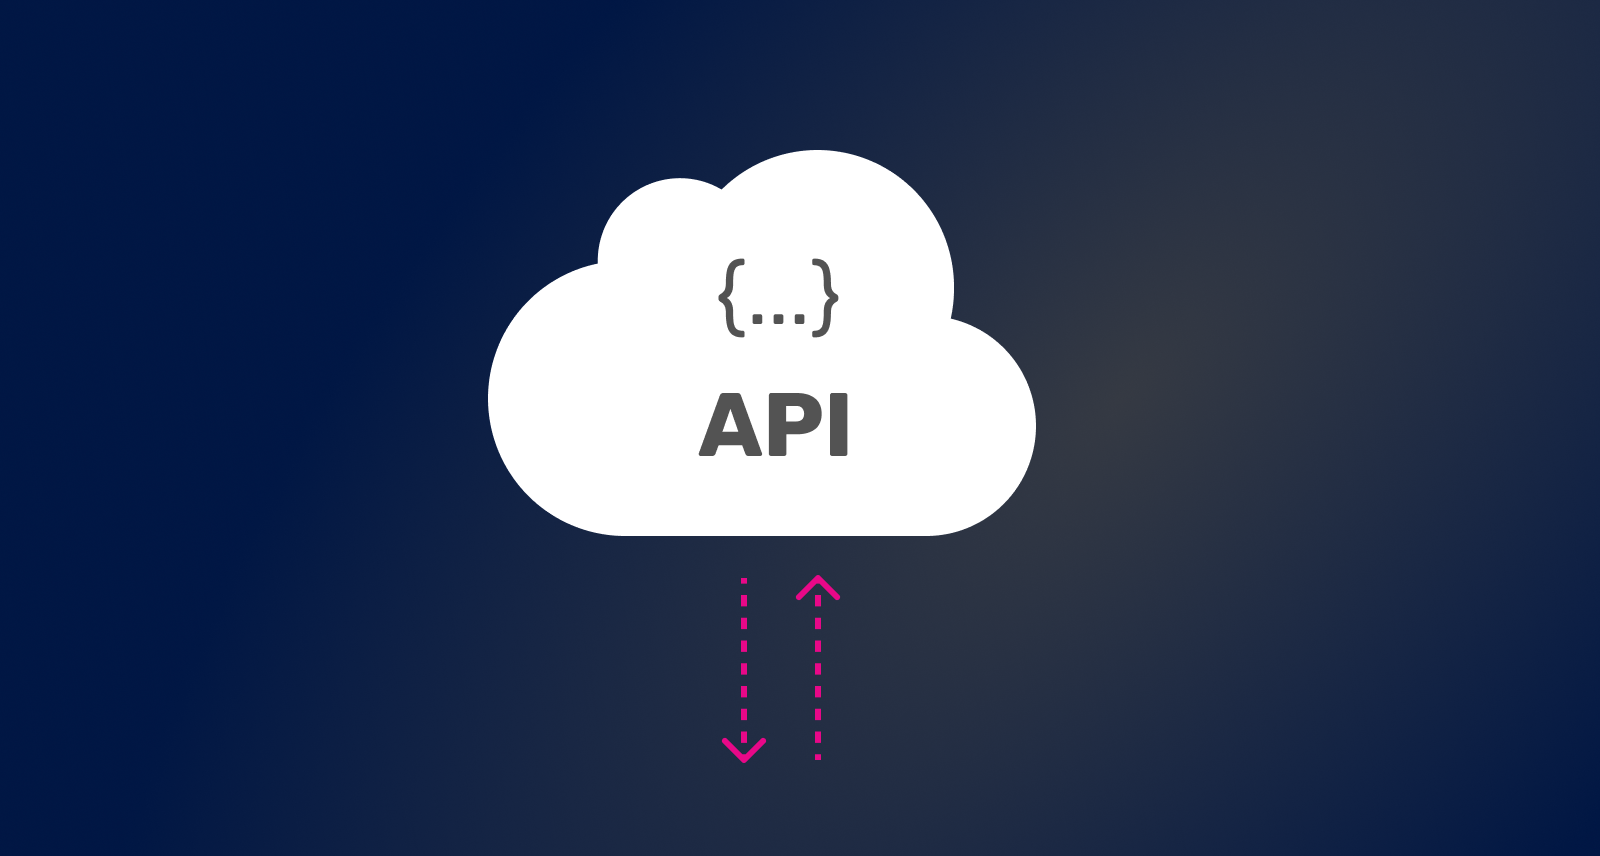 Een wolkje waar het woord API in staat. Onder het wolkje staan twee pijltjes